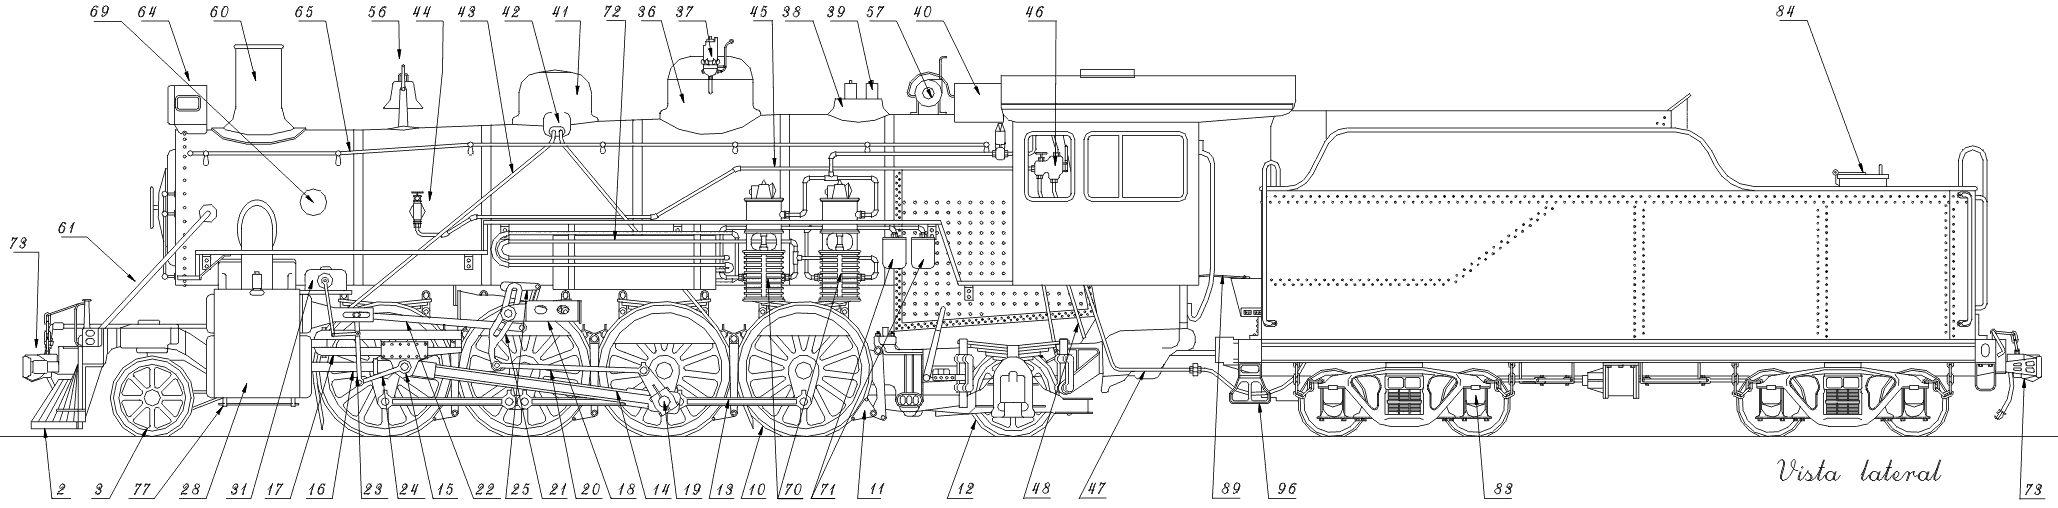 Desenho em perfil de uma locomotiva a vapor tipo Mikado, com indicação numerada das partes que a compõem